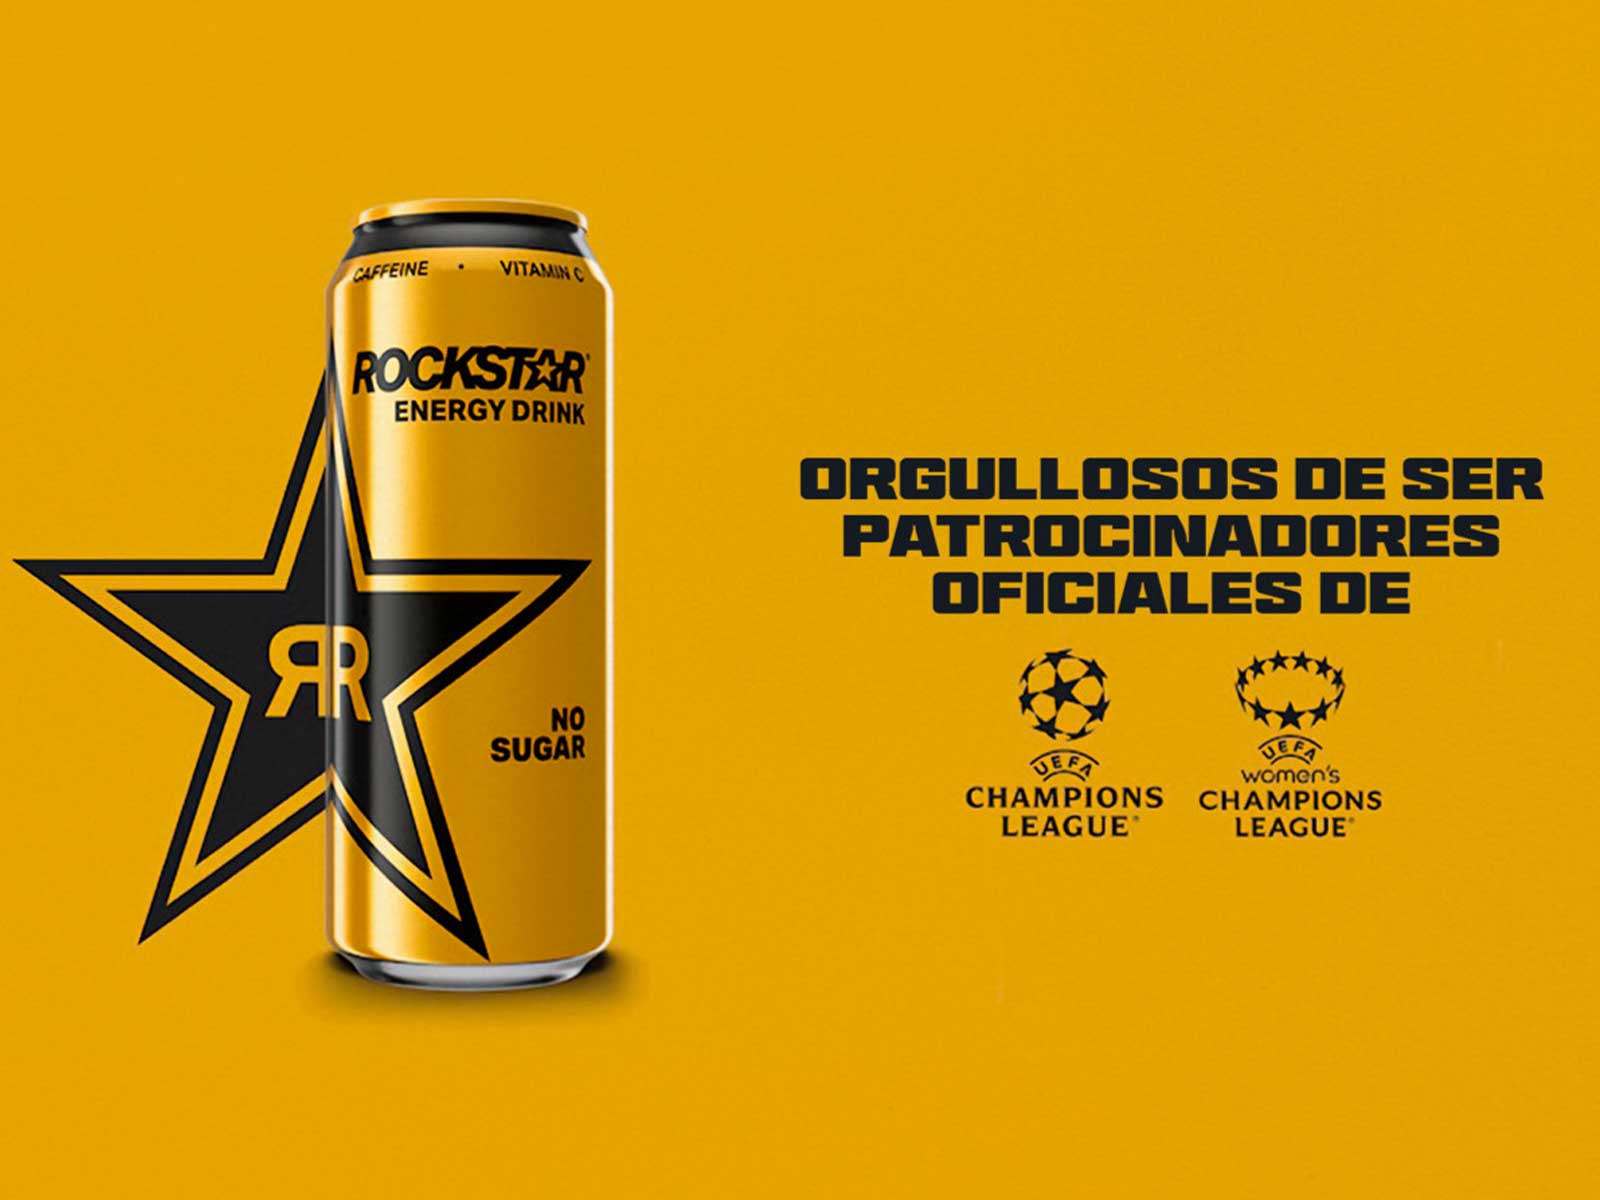 Rockstar® Energy Drink, patrocinador oficial de la UEFA Champions League